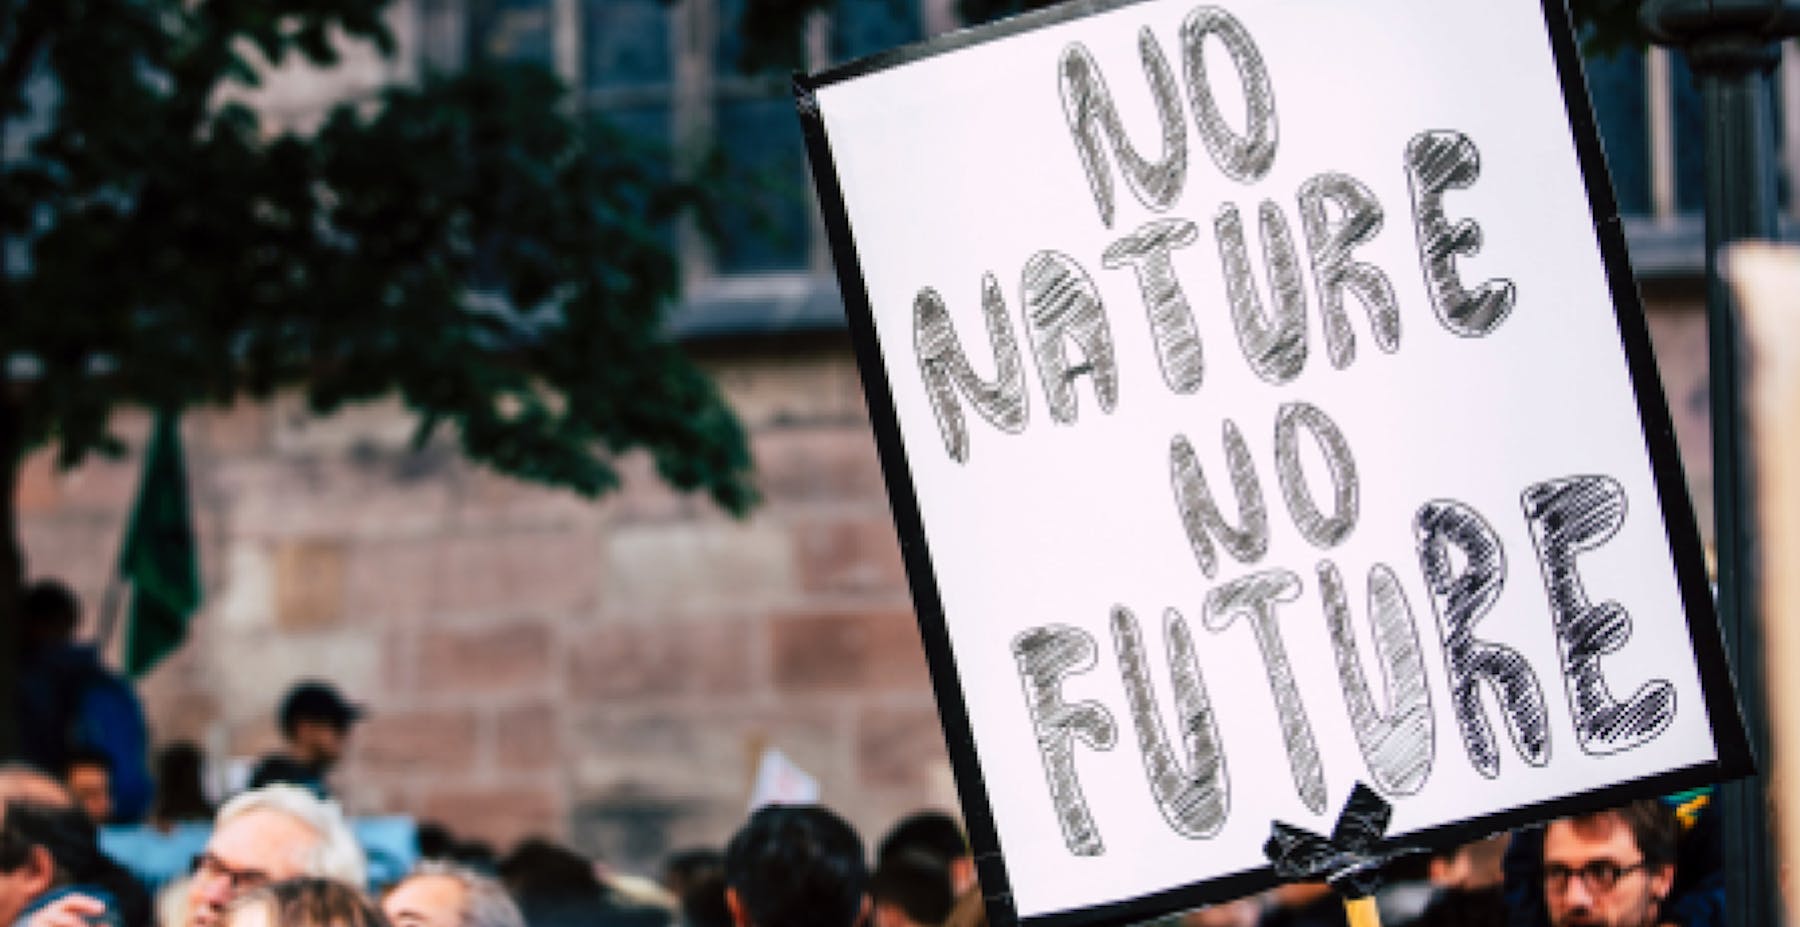 une pancarte de manifestation portant l'inscription "No nature no future"